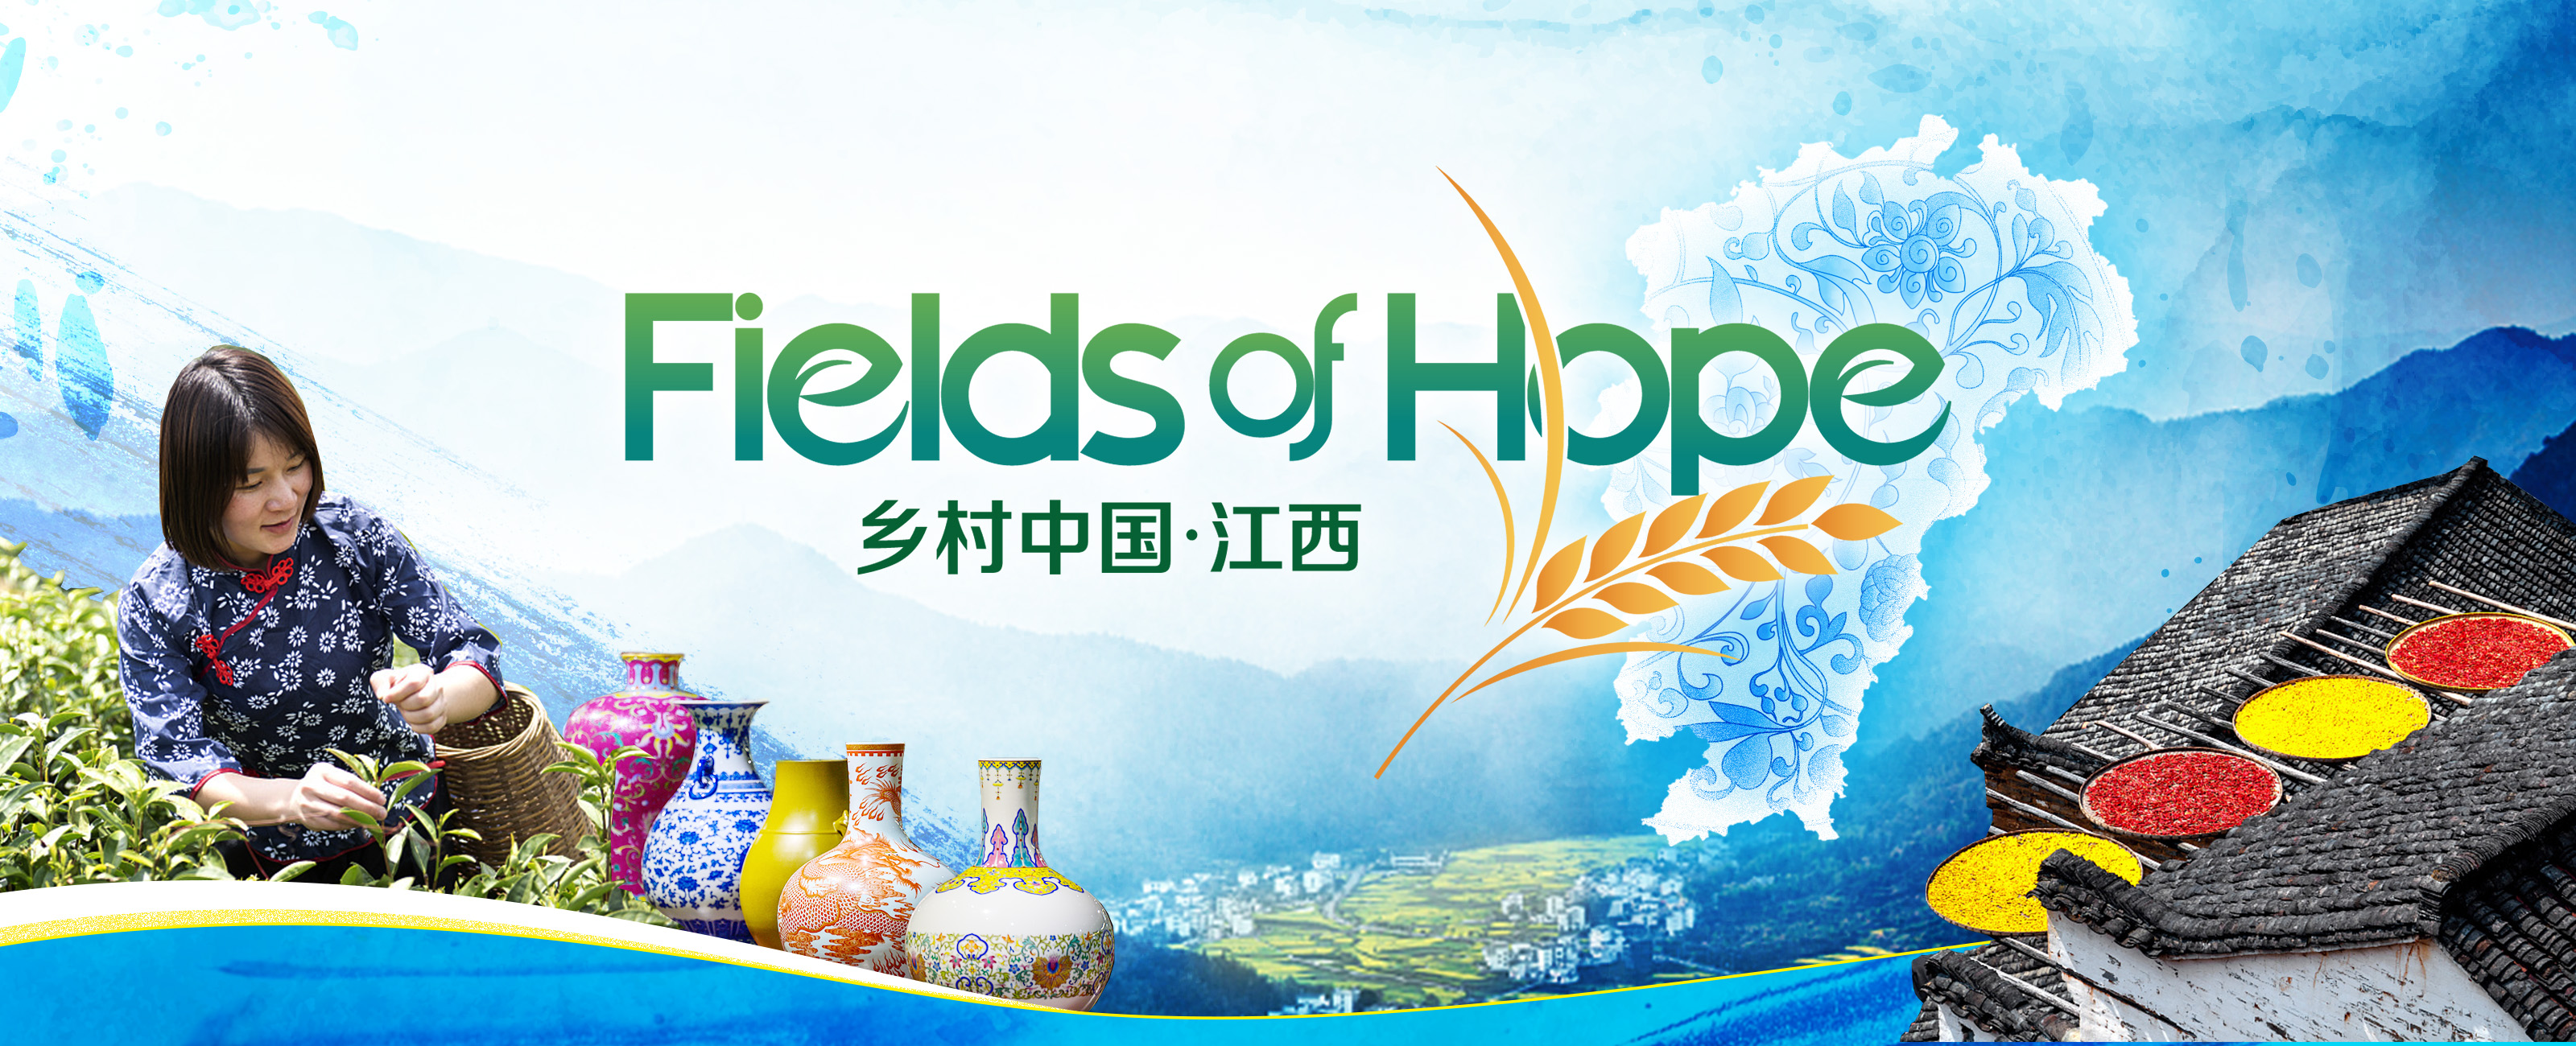 fields of hope